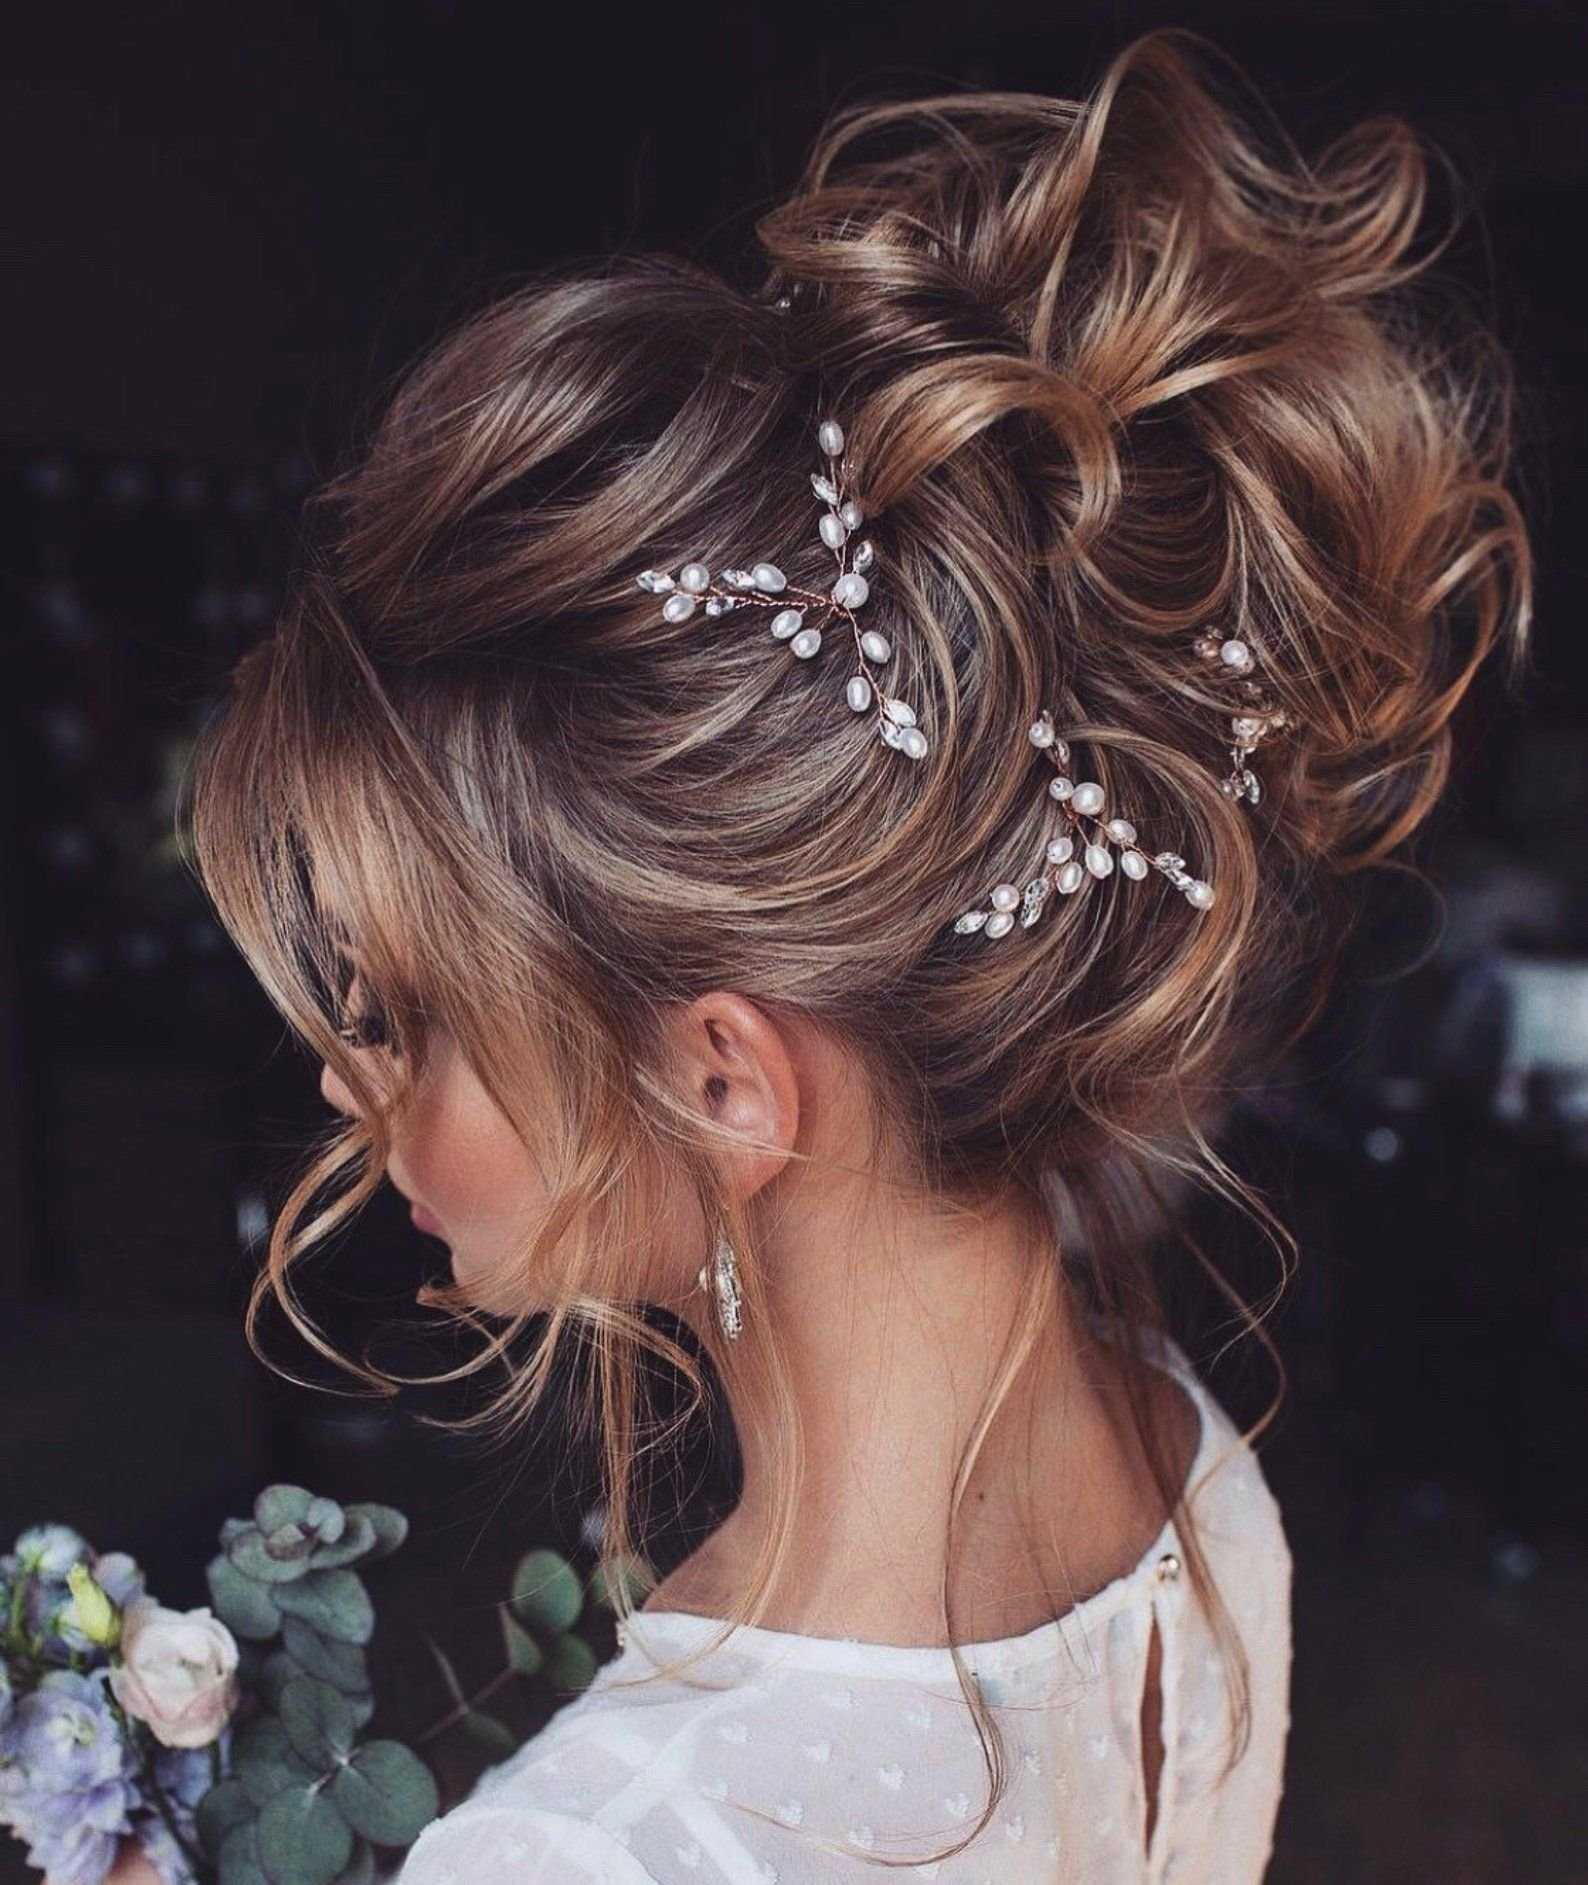 Свадебная прическа с диадемой, цветами и фатой сзади на длинные волосы